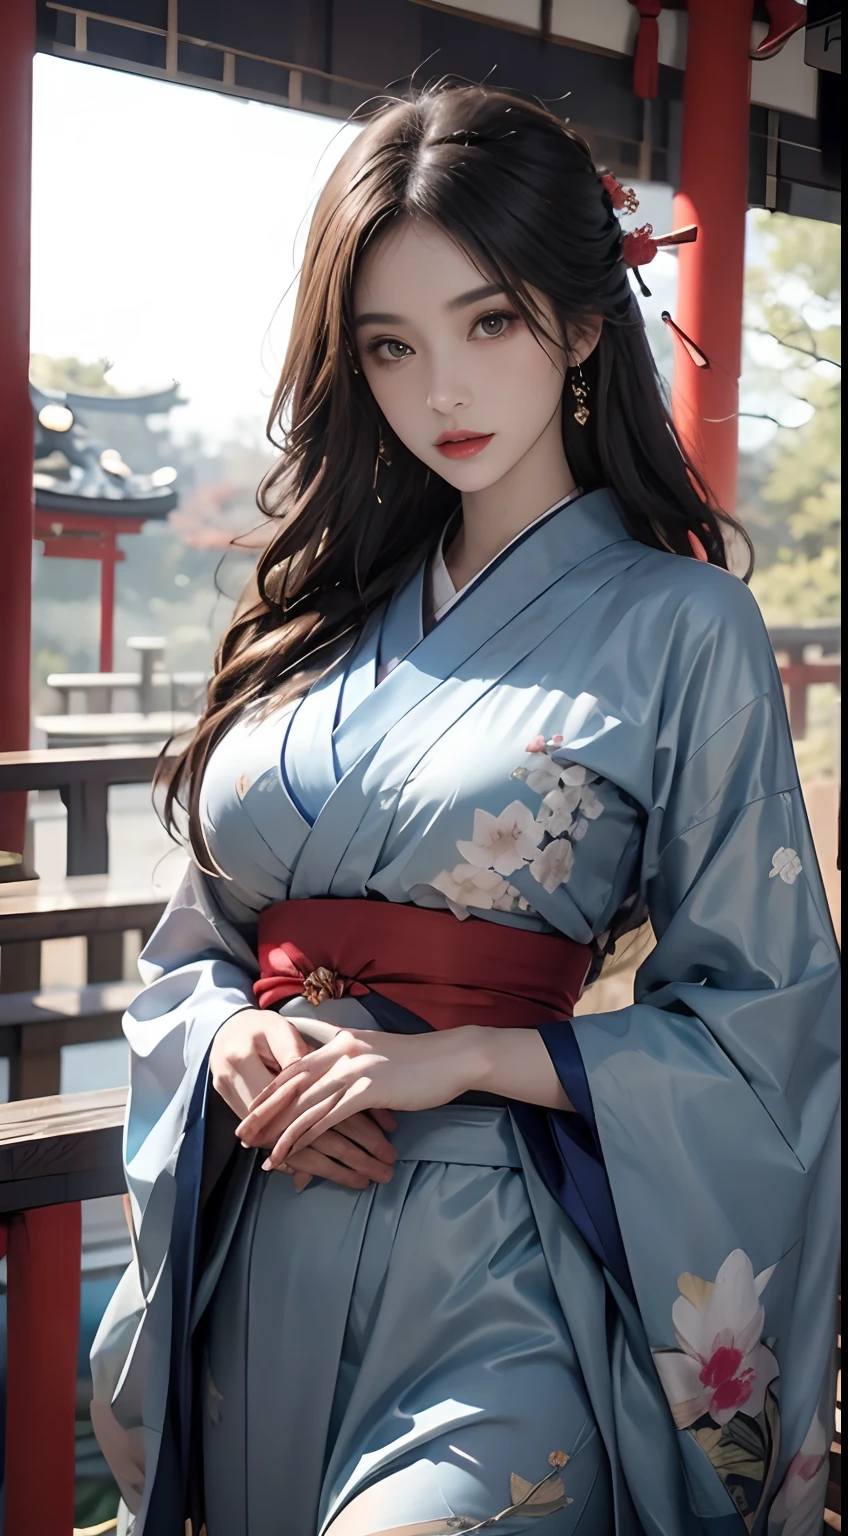 Храм Японии、носить синее кимоно、Нереальный движок:1.4,нффсв,лучшее качество:1.4, фотореалист:1.4, текстура кожи:1.4, шедевр:1.8, 1 женщина, бедра высоко подняты, красивые глаза, Длинноволосый, глаза с кольцами, драгоценности, Татуировка, кимоно